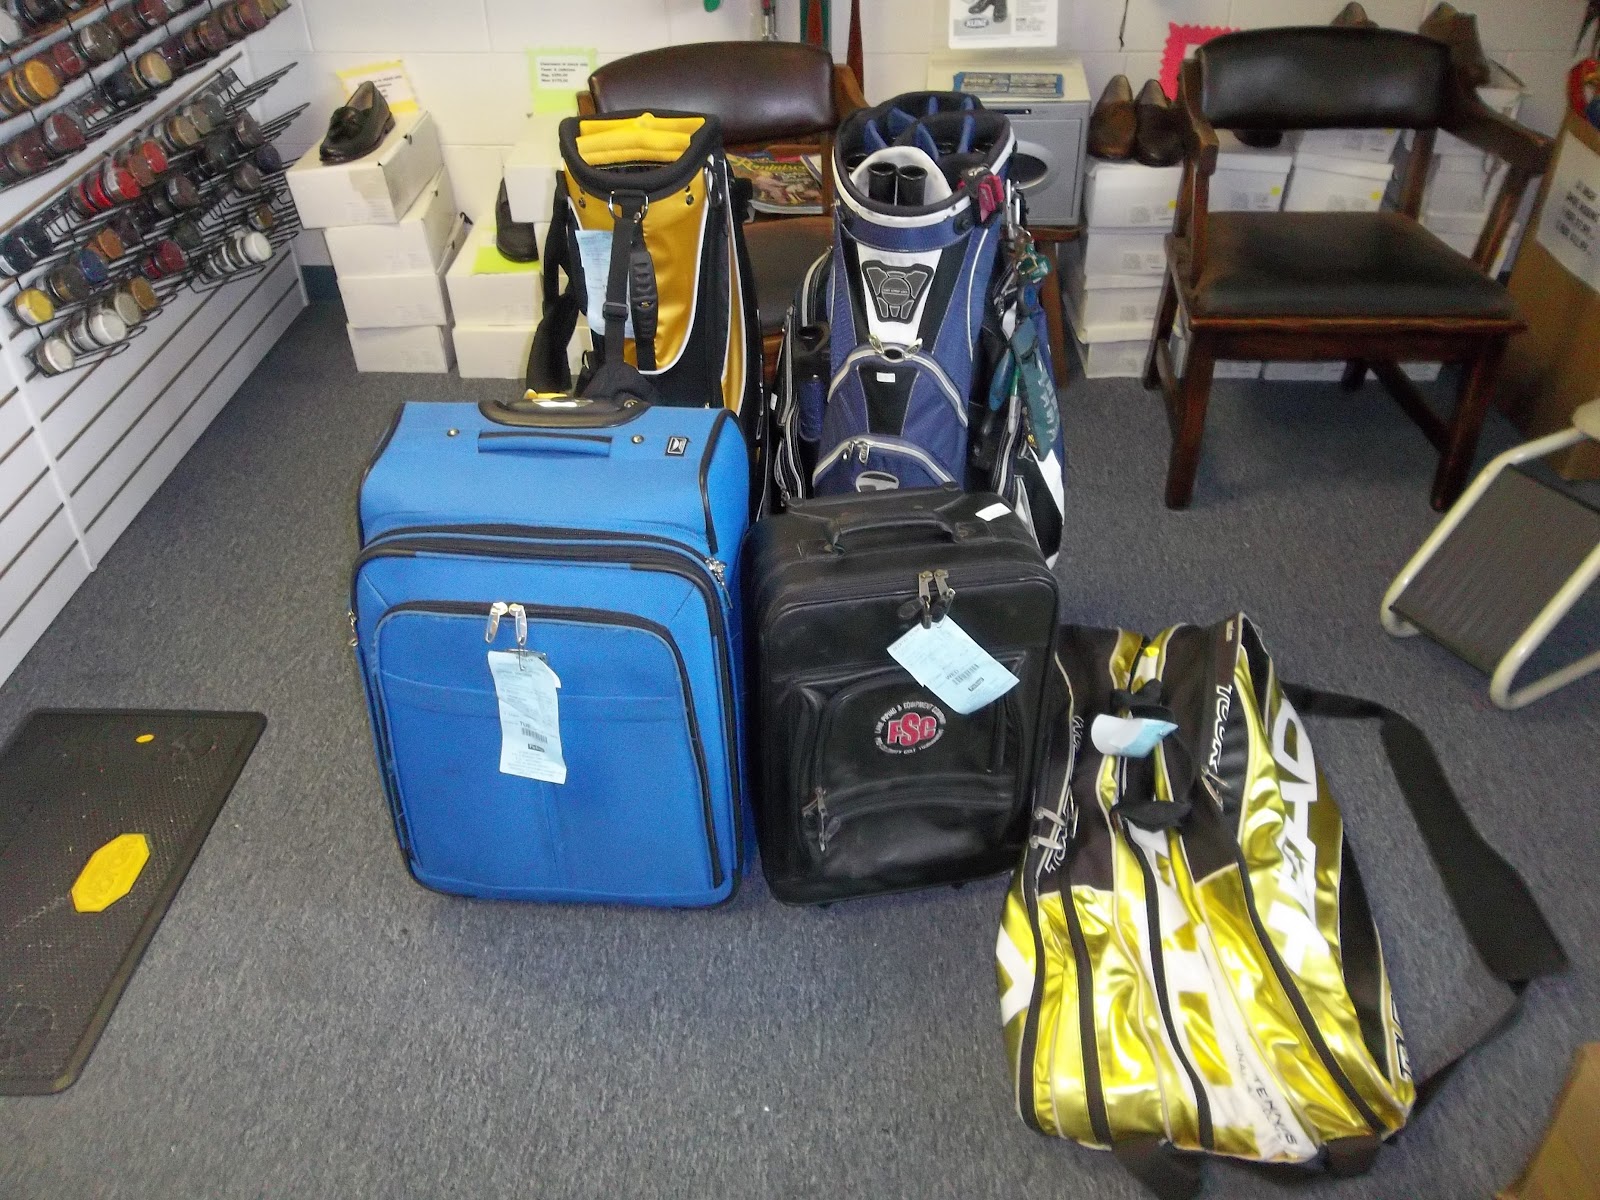 Edgewood Drive Shoe Repair: Luggage, Duffle Bag, and Golf Bag Repair